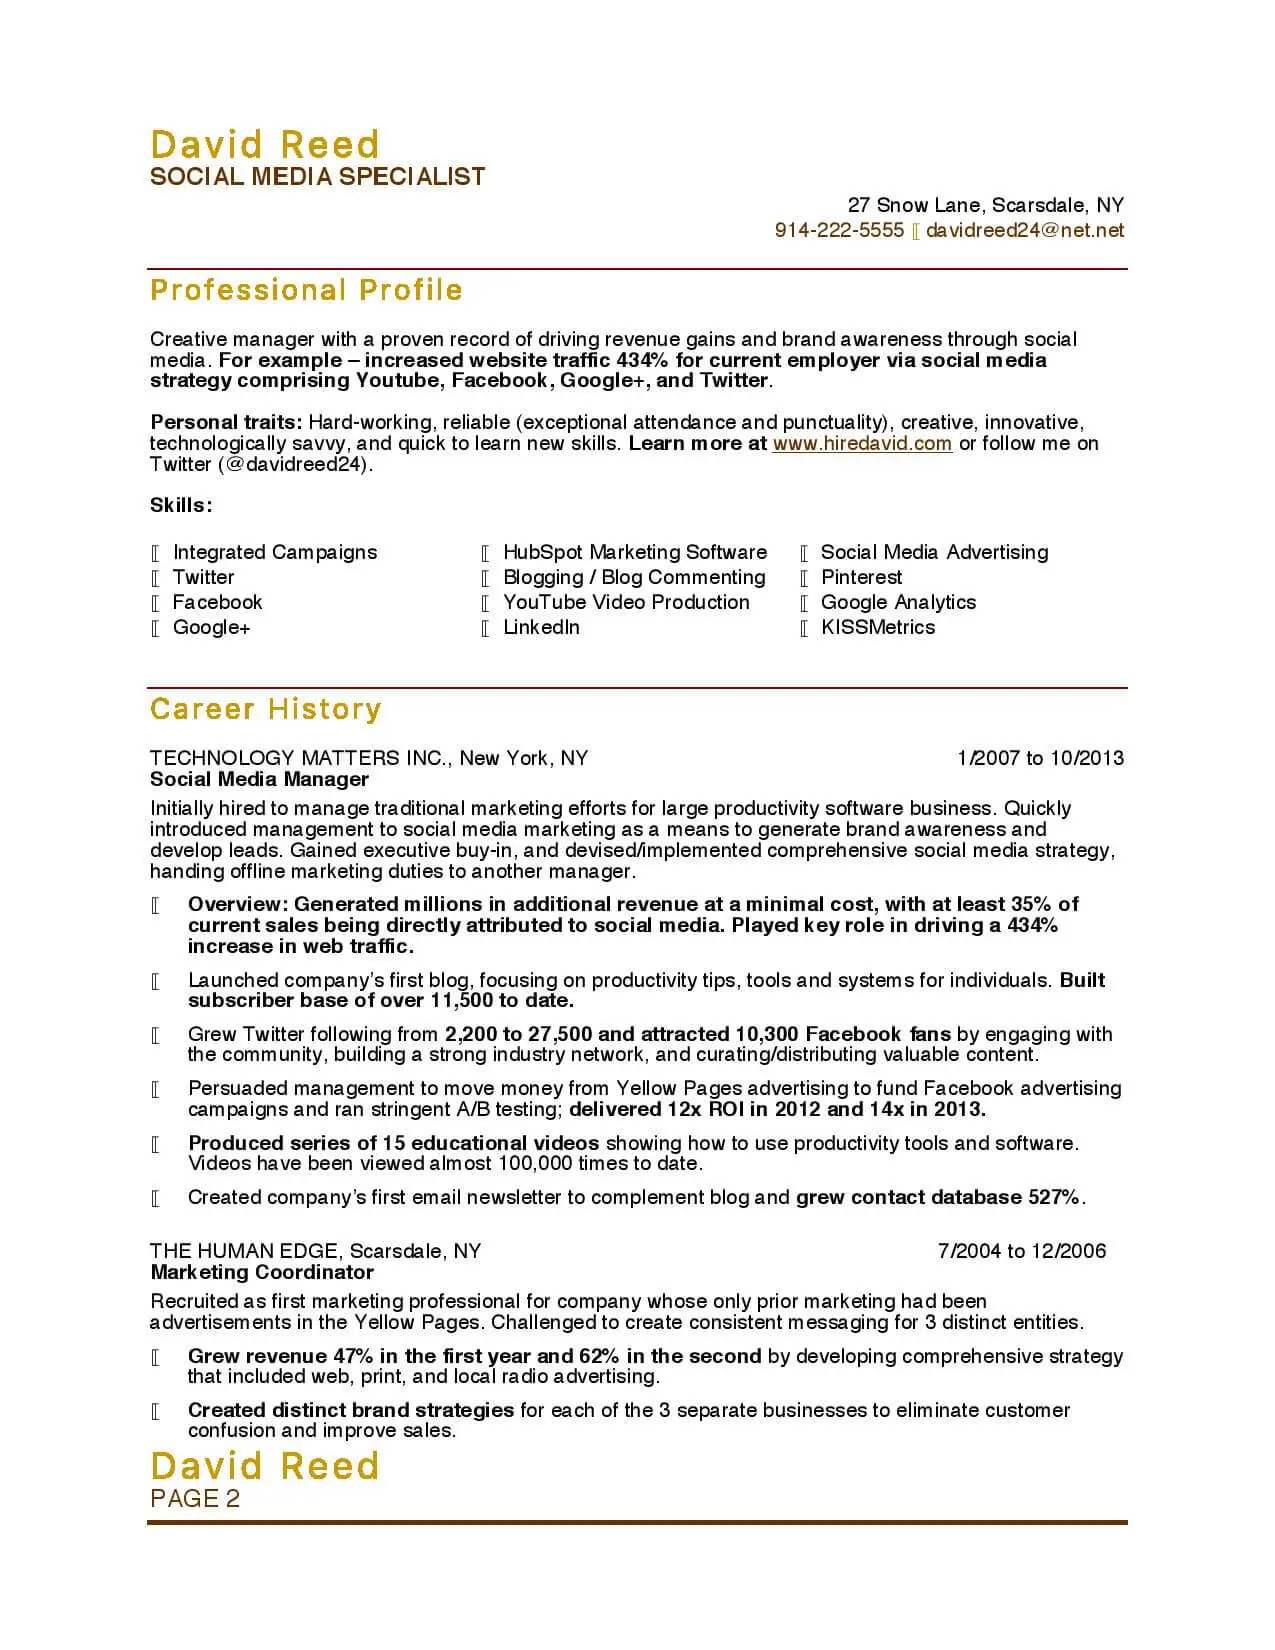 Job seeker web resume samples